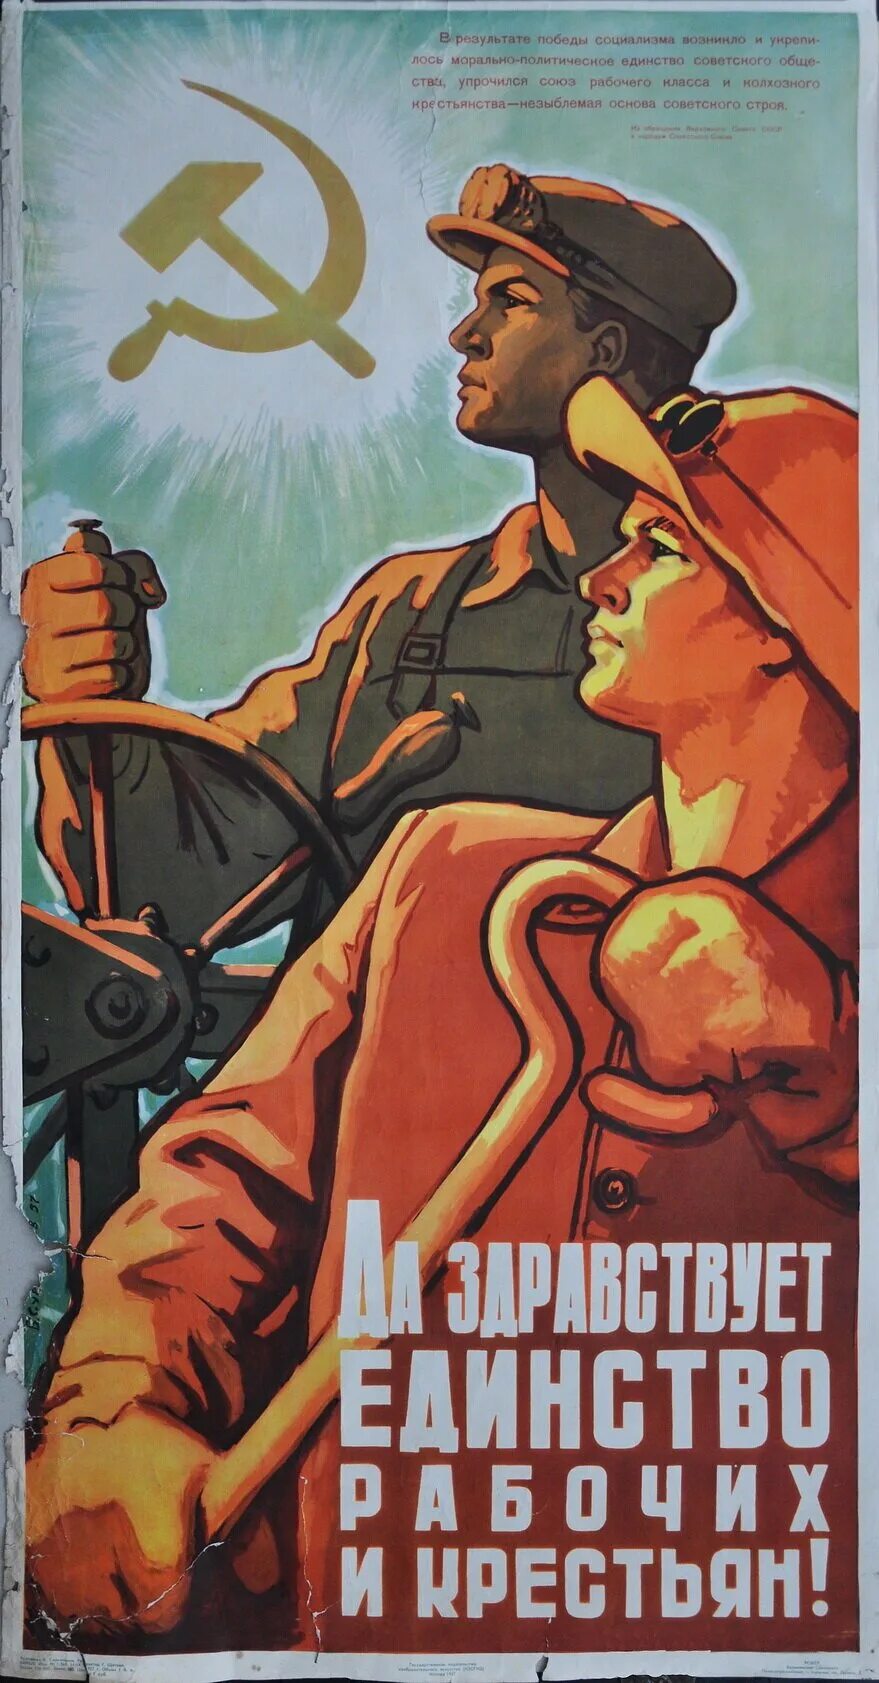 Рабочий класс в советском обществе. Плакат. Рабочий плакат. Советские постеры. Советские плакаты про труд.